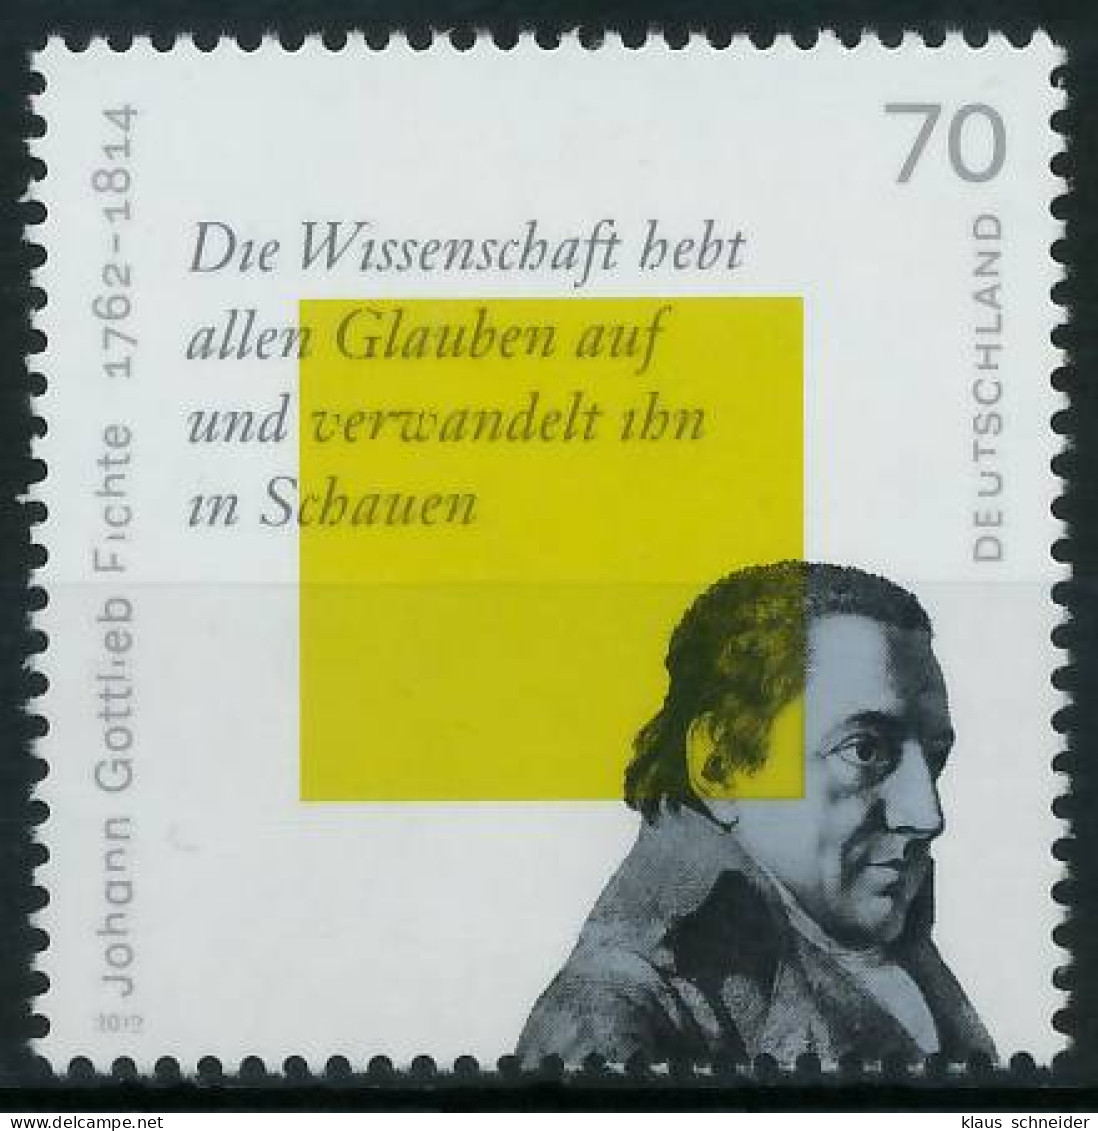 BRD BUND 2012 Nr 2934 Postfrisch S3B7F9E - Unused Stamps